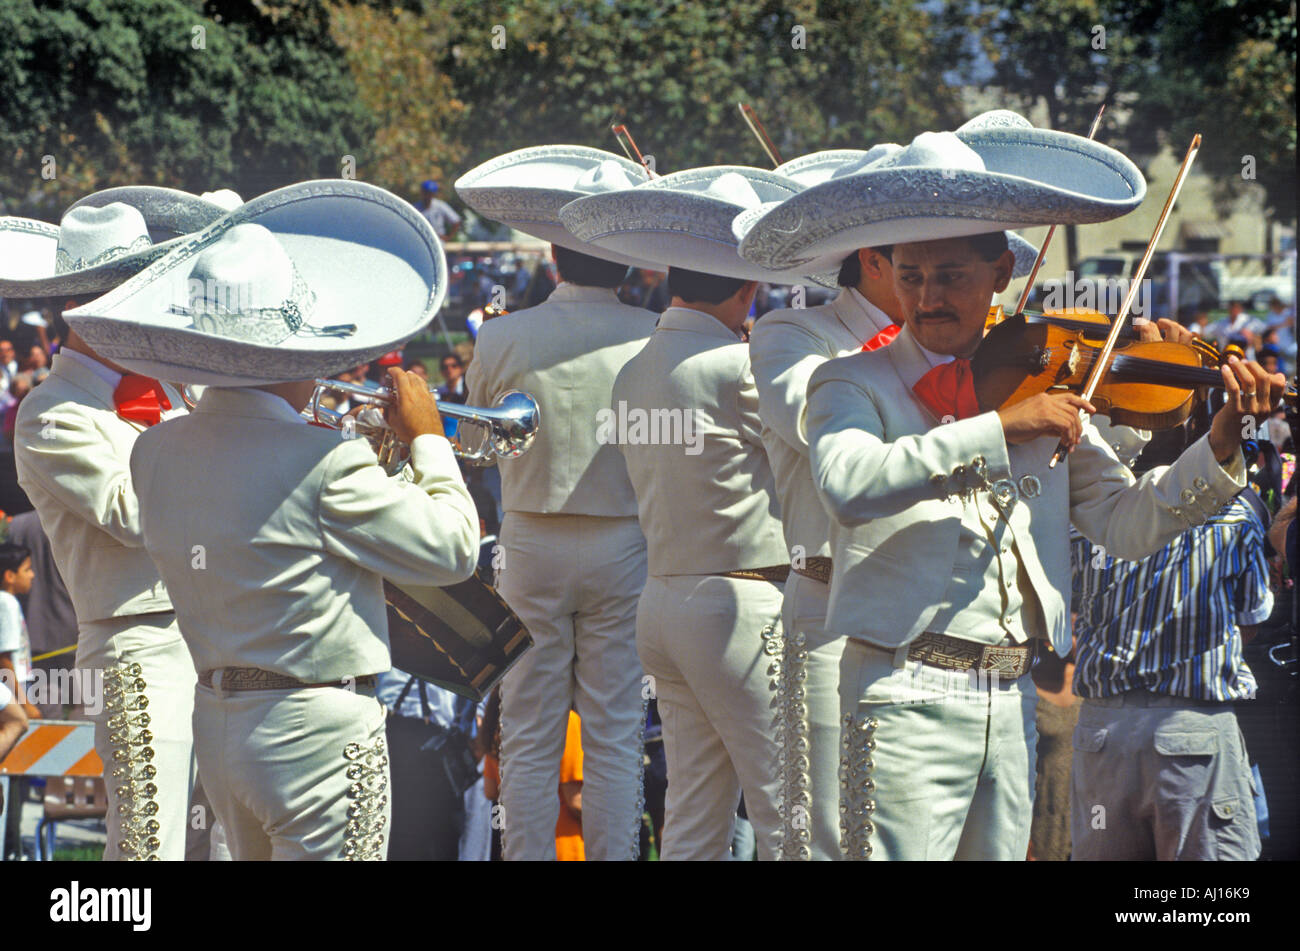 En dehors de la scène traditionnelle mariachis en costumes blancs le jour de l'indépendance mexicaine Baldwin Park CA Banque D'Images